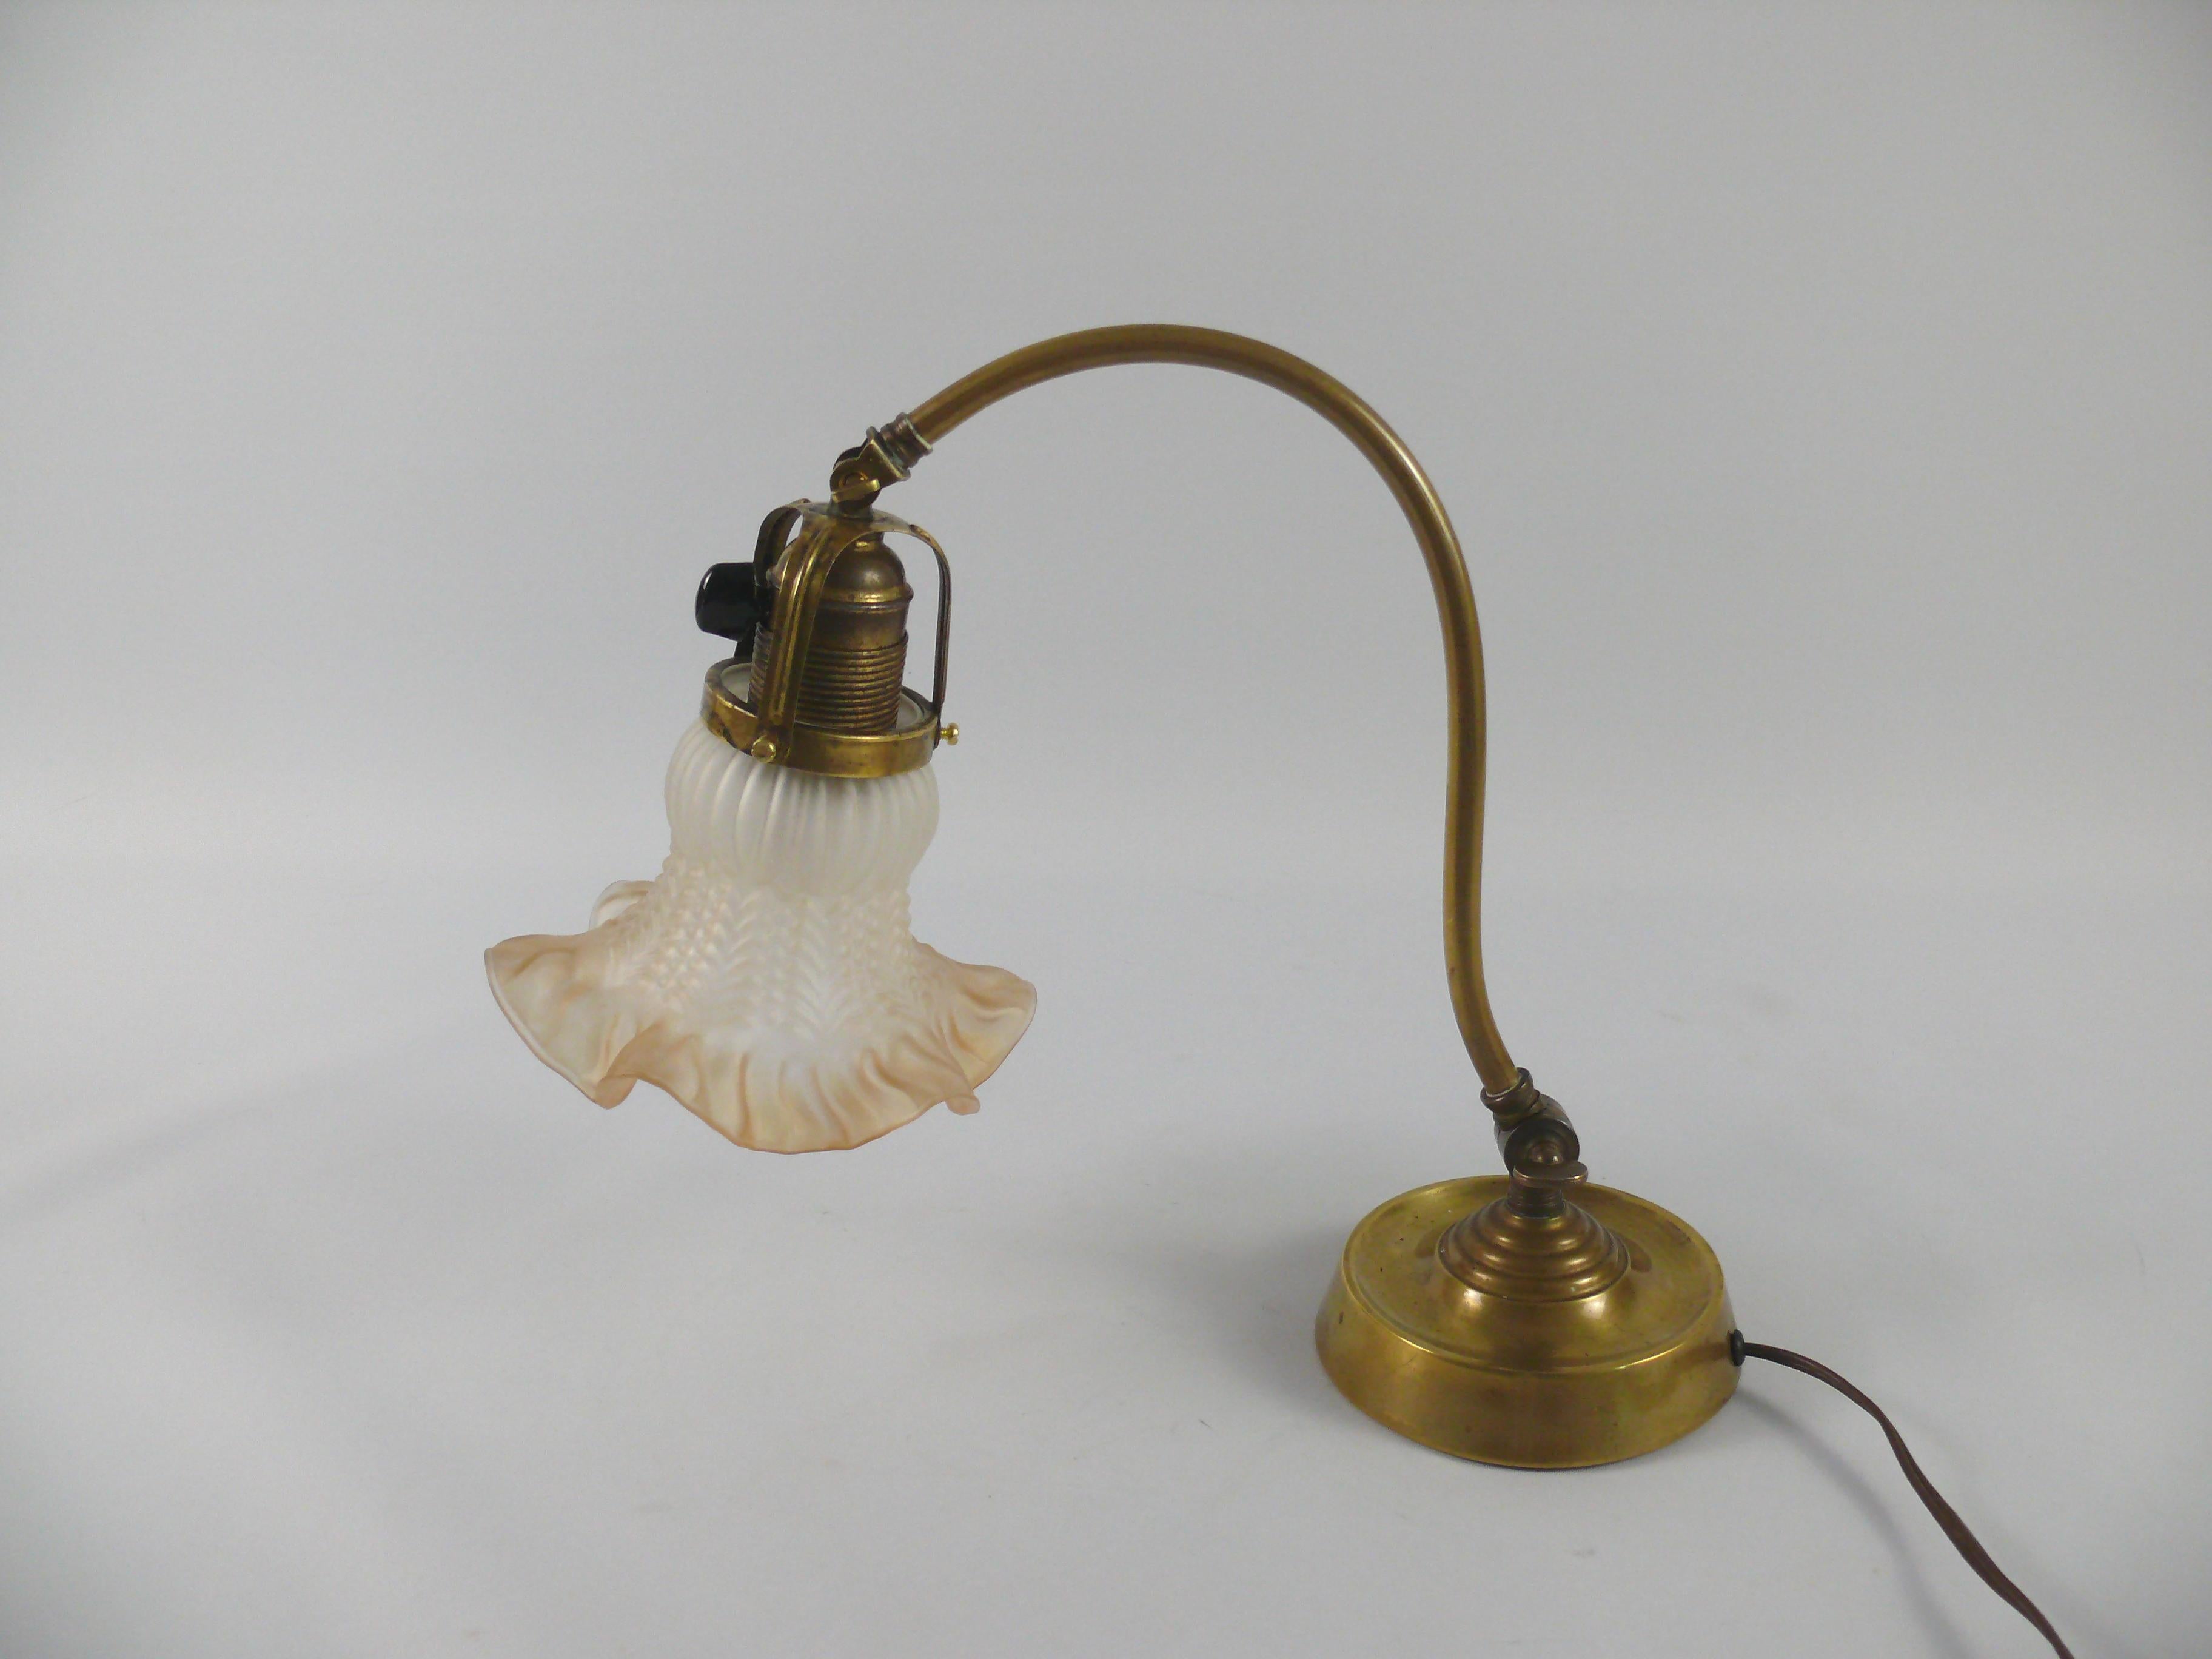 Jugendstil Art Nouveau Piano Lamp / Table Lamp